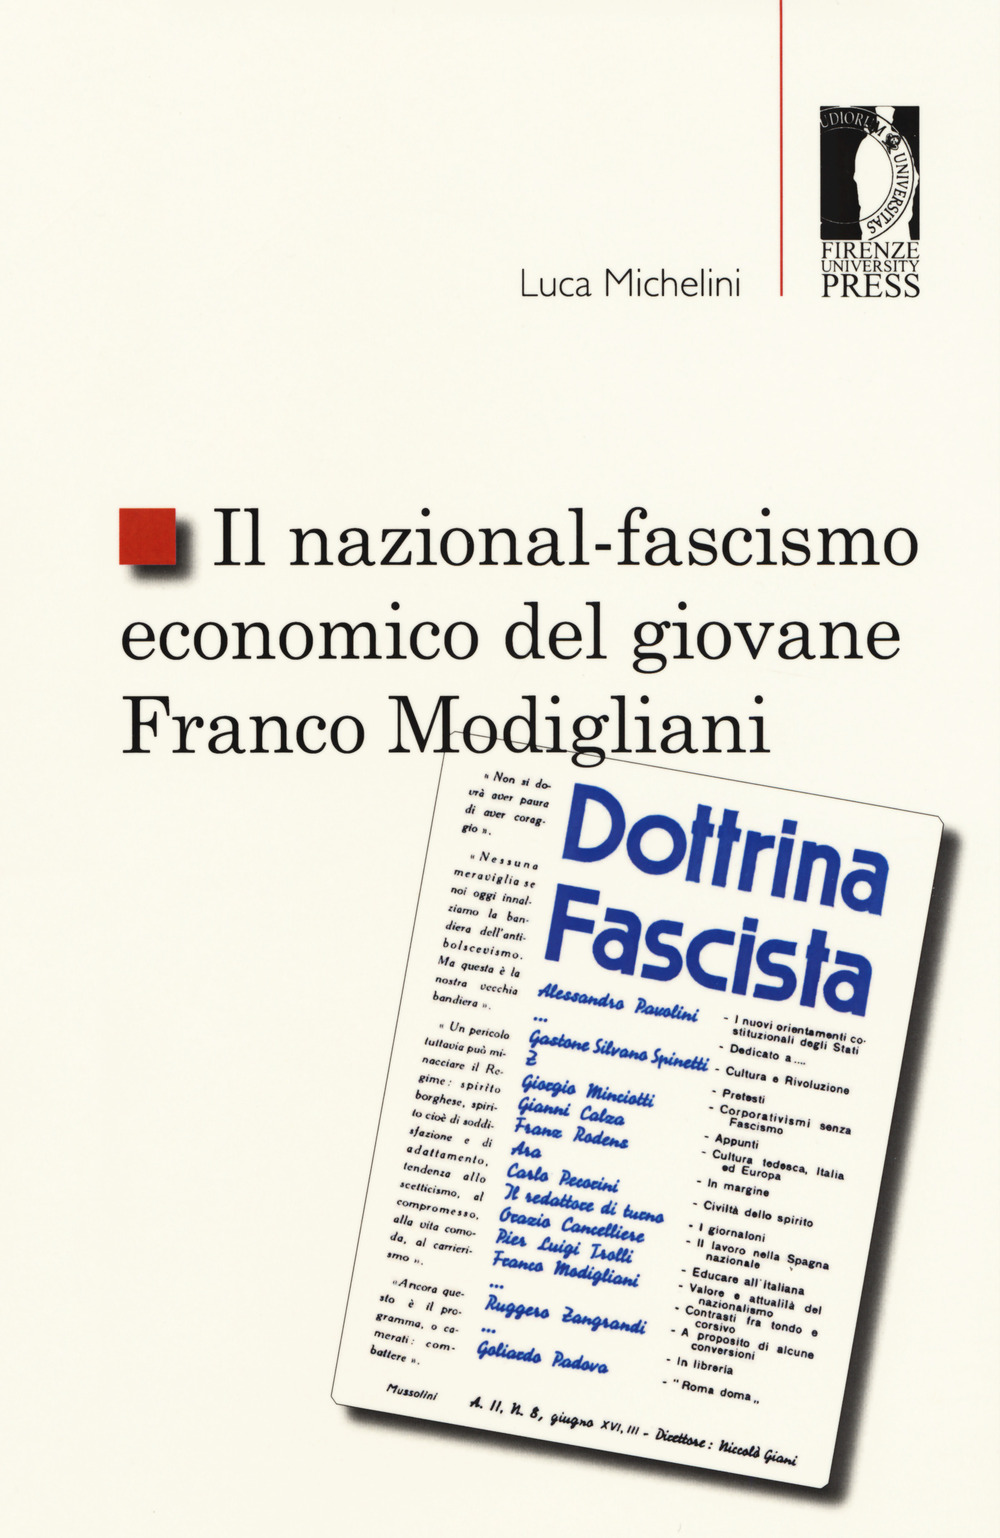 Il nazional-fascismo economico del giovane Franco Modigliani